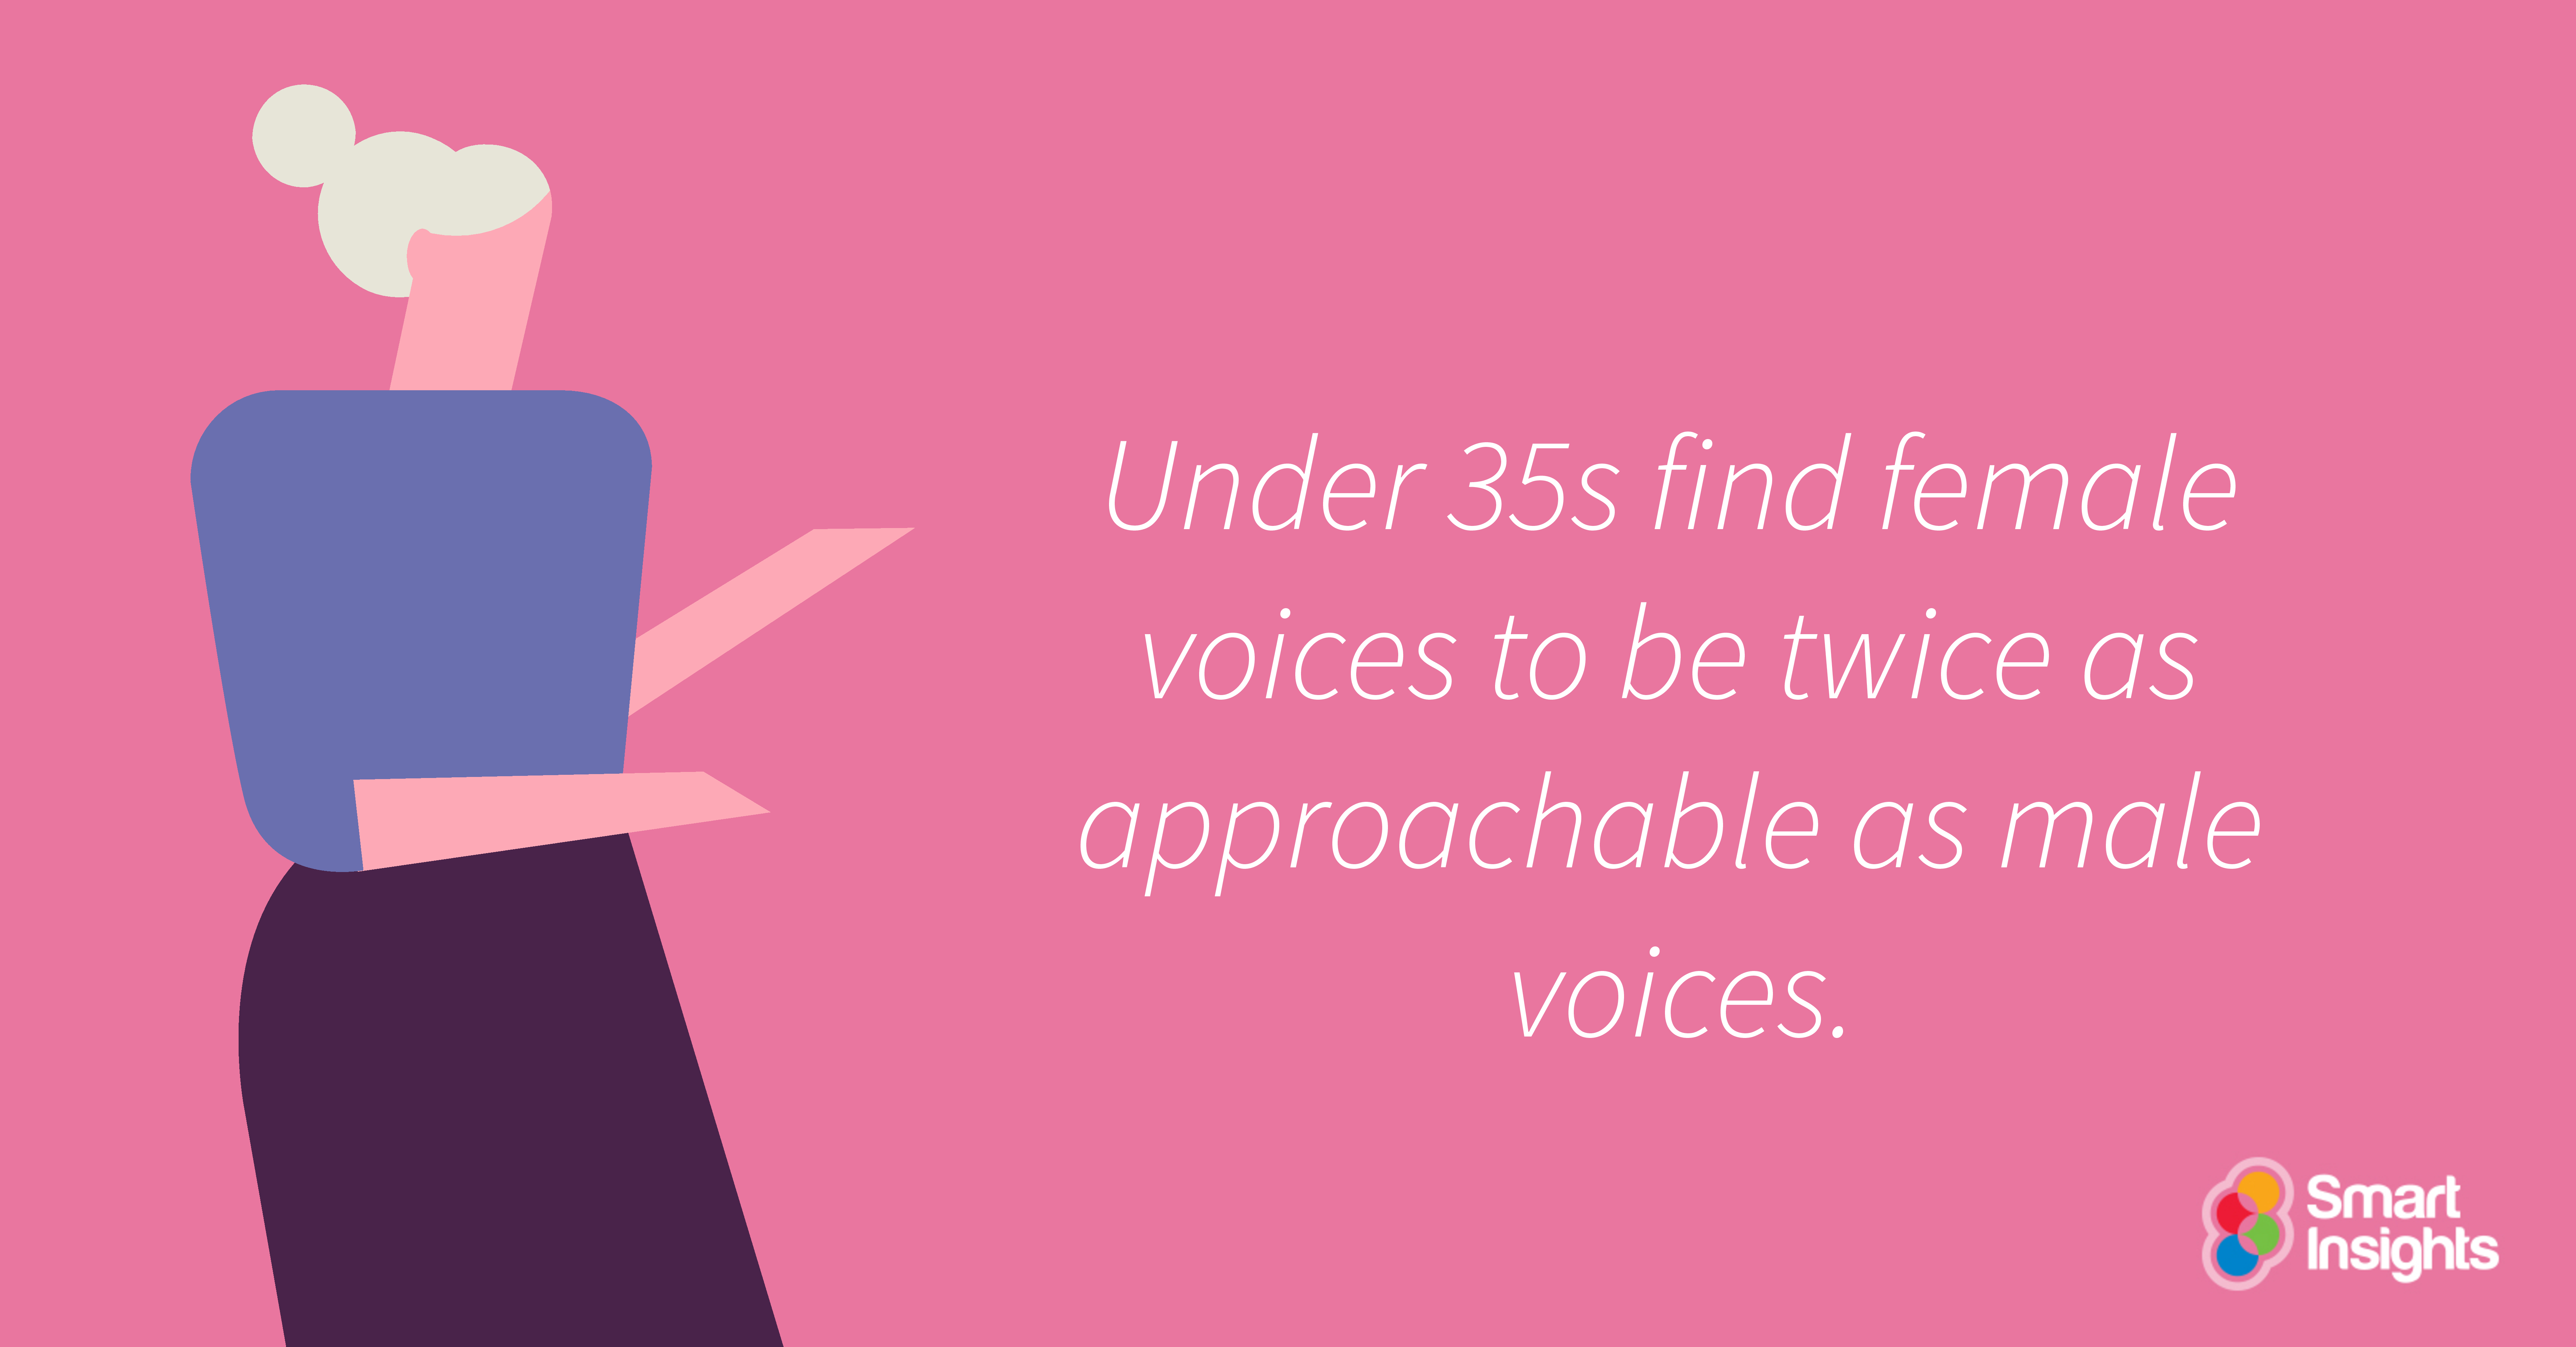 Sotto i 35 anni le voci femminili sono due volte più accessibili delle voci maschili